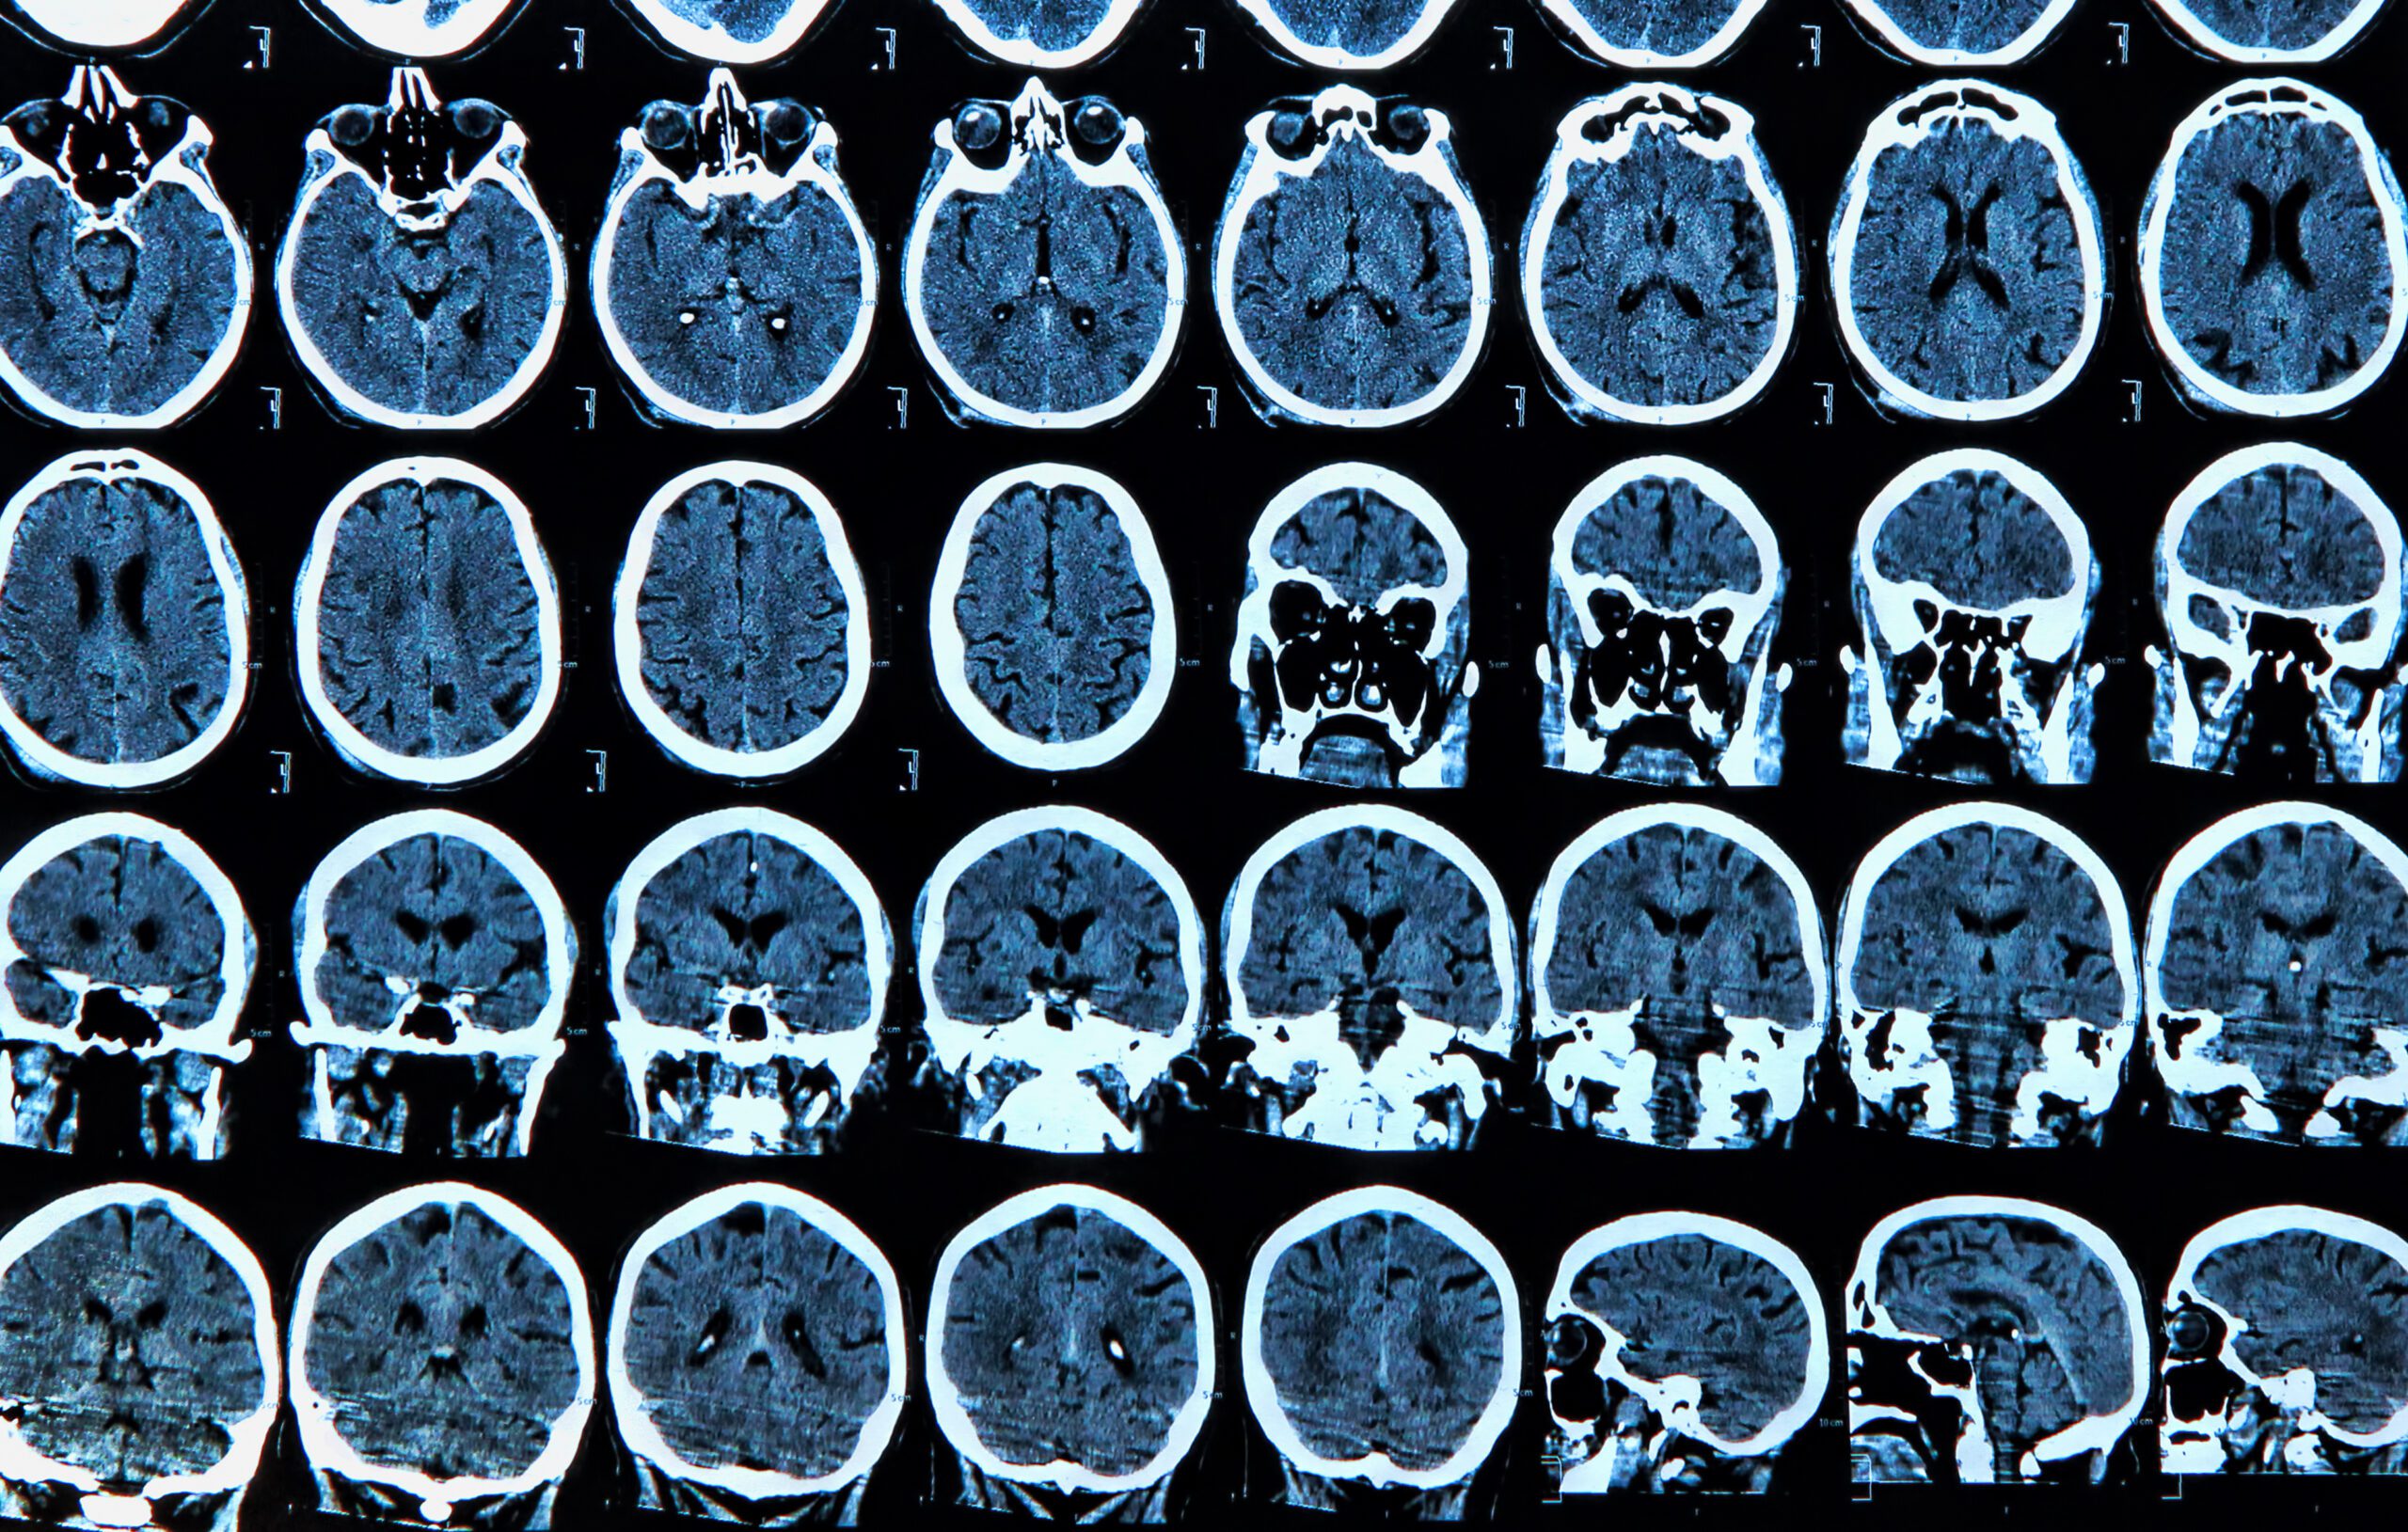 MRI scan of the human brain